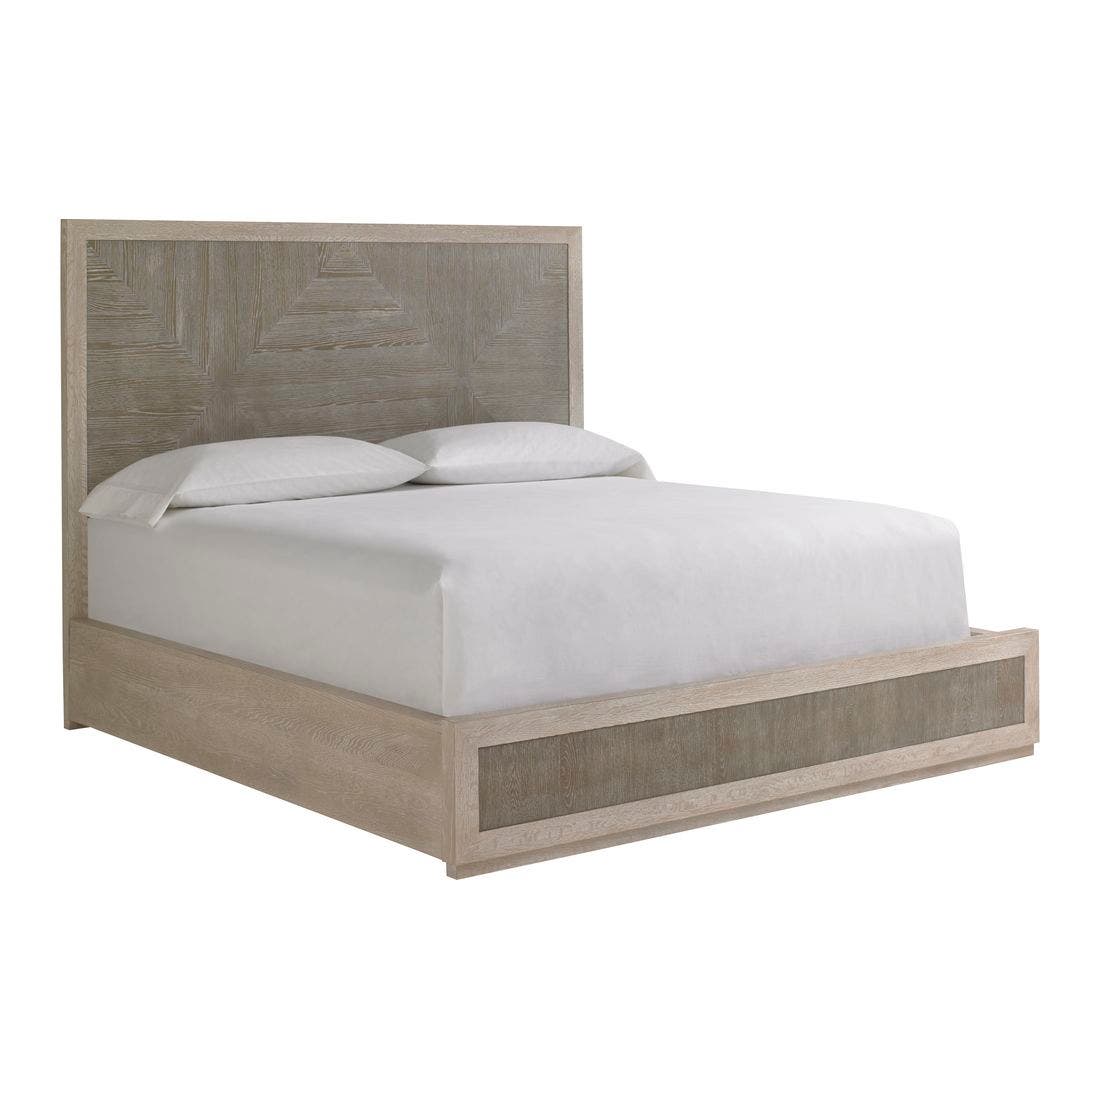 19170521-modern-quartz-furniture-bedroom-furniture-beds-01